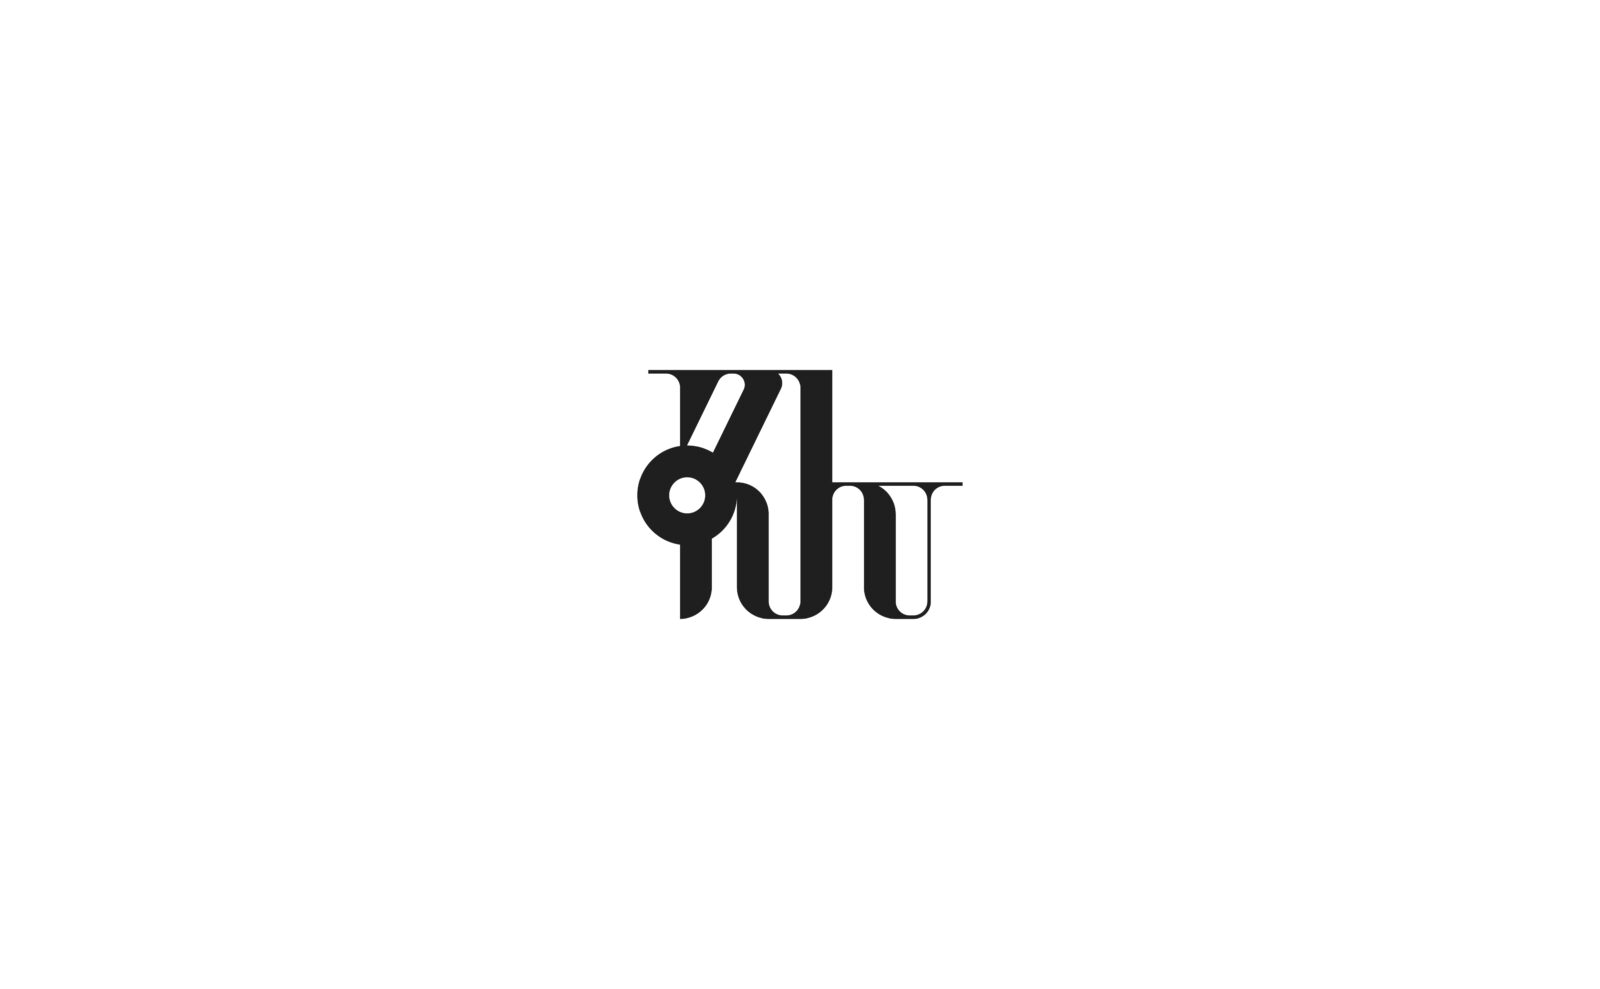 KHU__-1